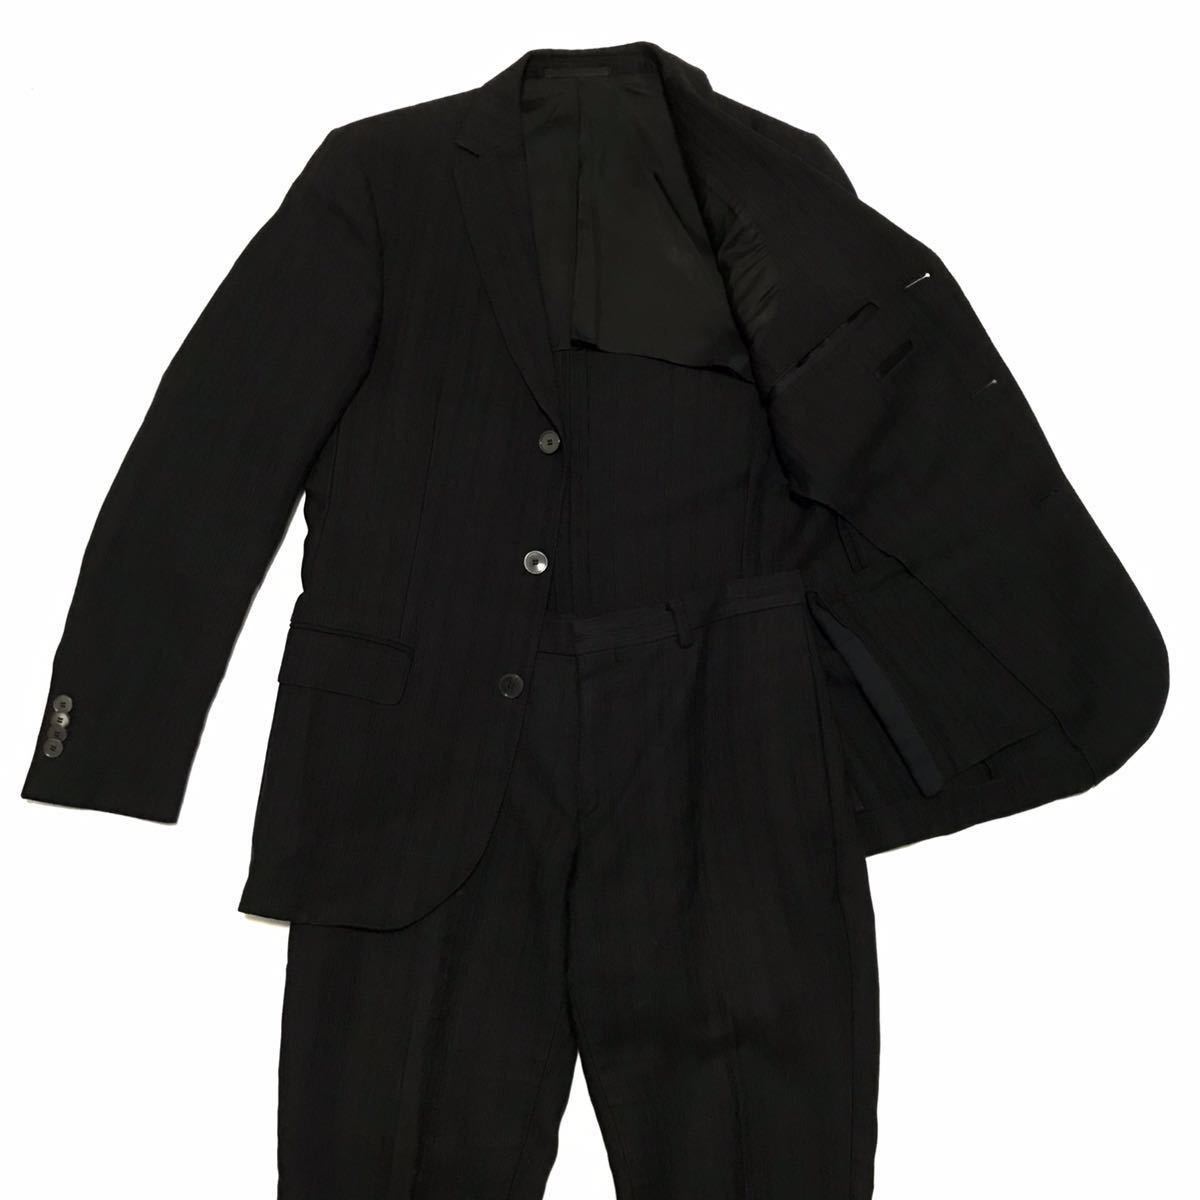 【ジーゼニア】本物 Z Zegna スーツ セットアップ 3B ジャケット スラックス サイズTG 44C 麻36%×綿33%×レーヨン31% 男性用 メンズ